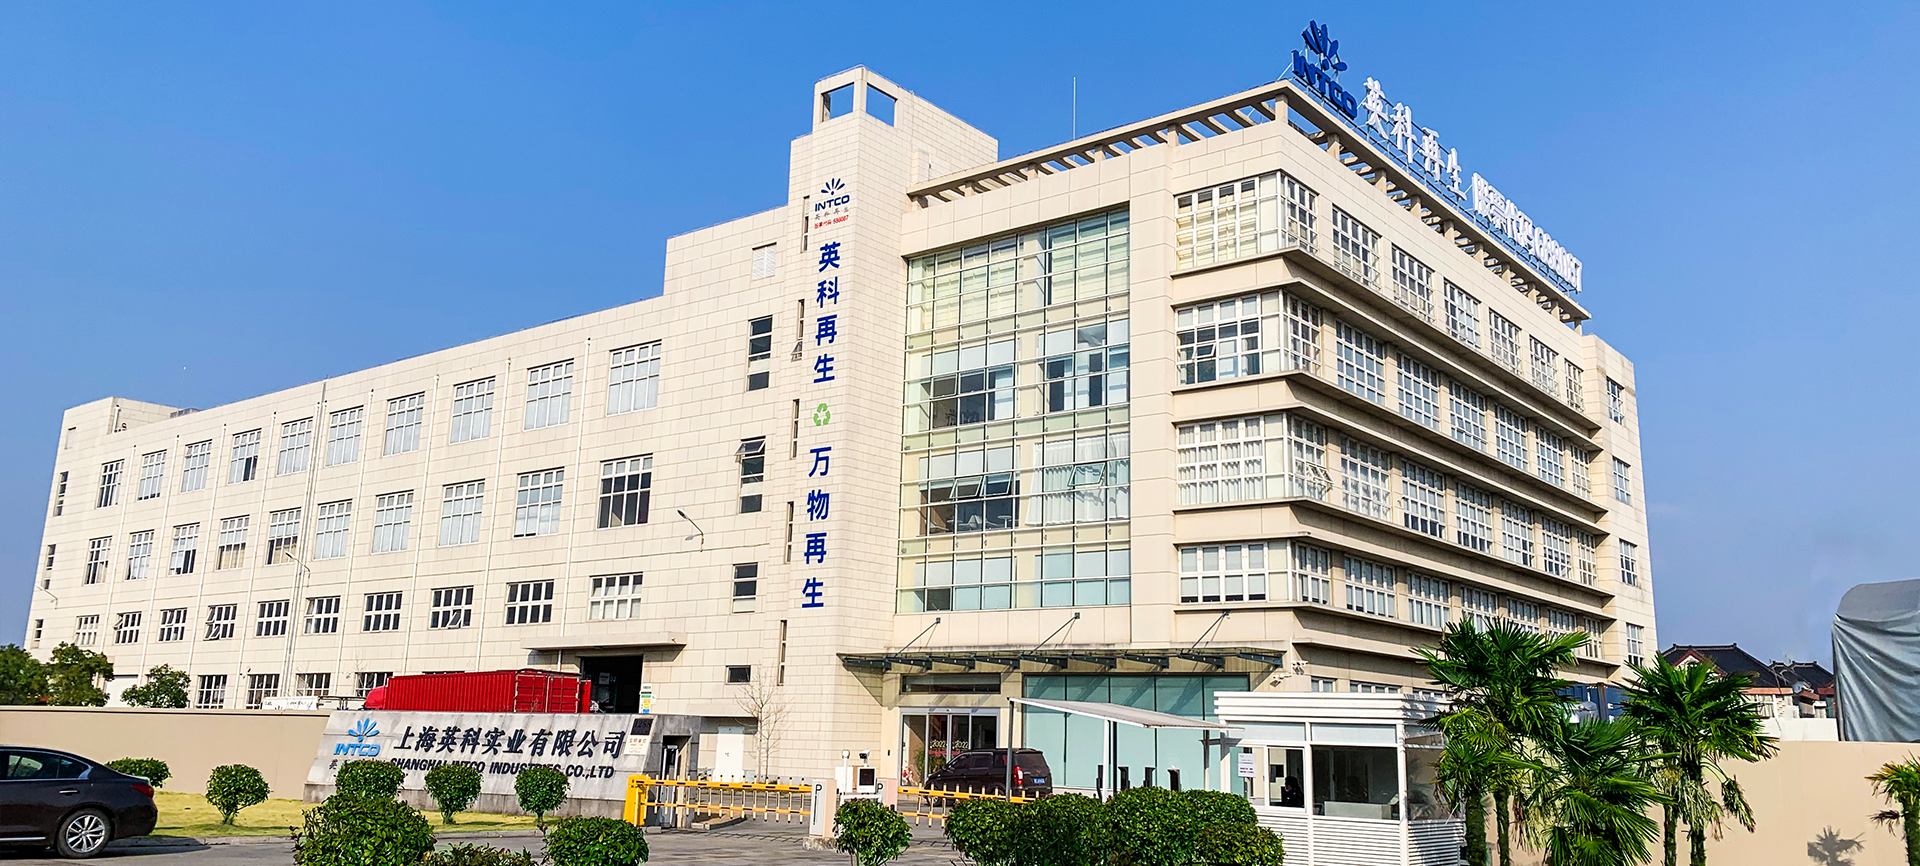 上海英科是一马一肖第2大造粒、框条及成品框类产品的生产基地